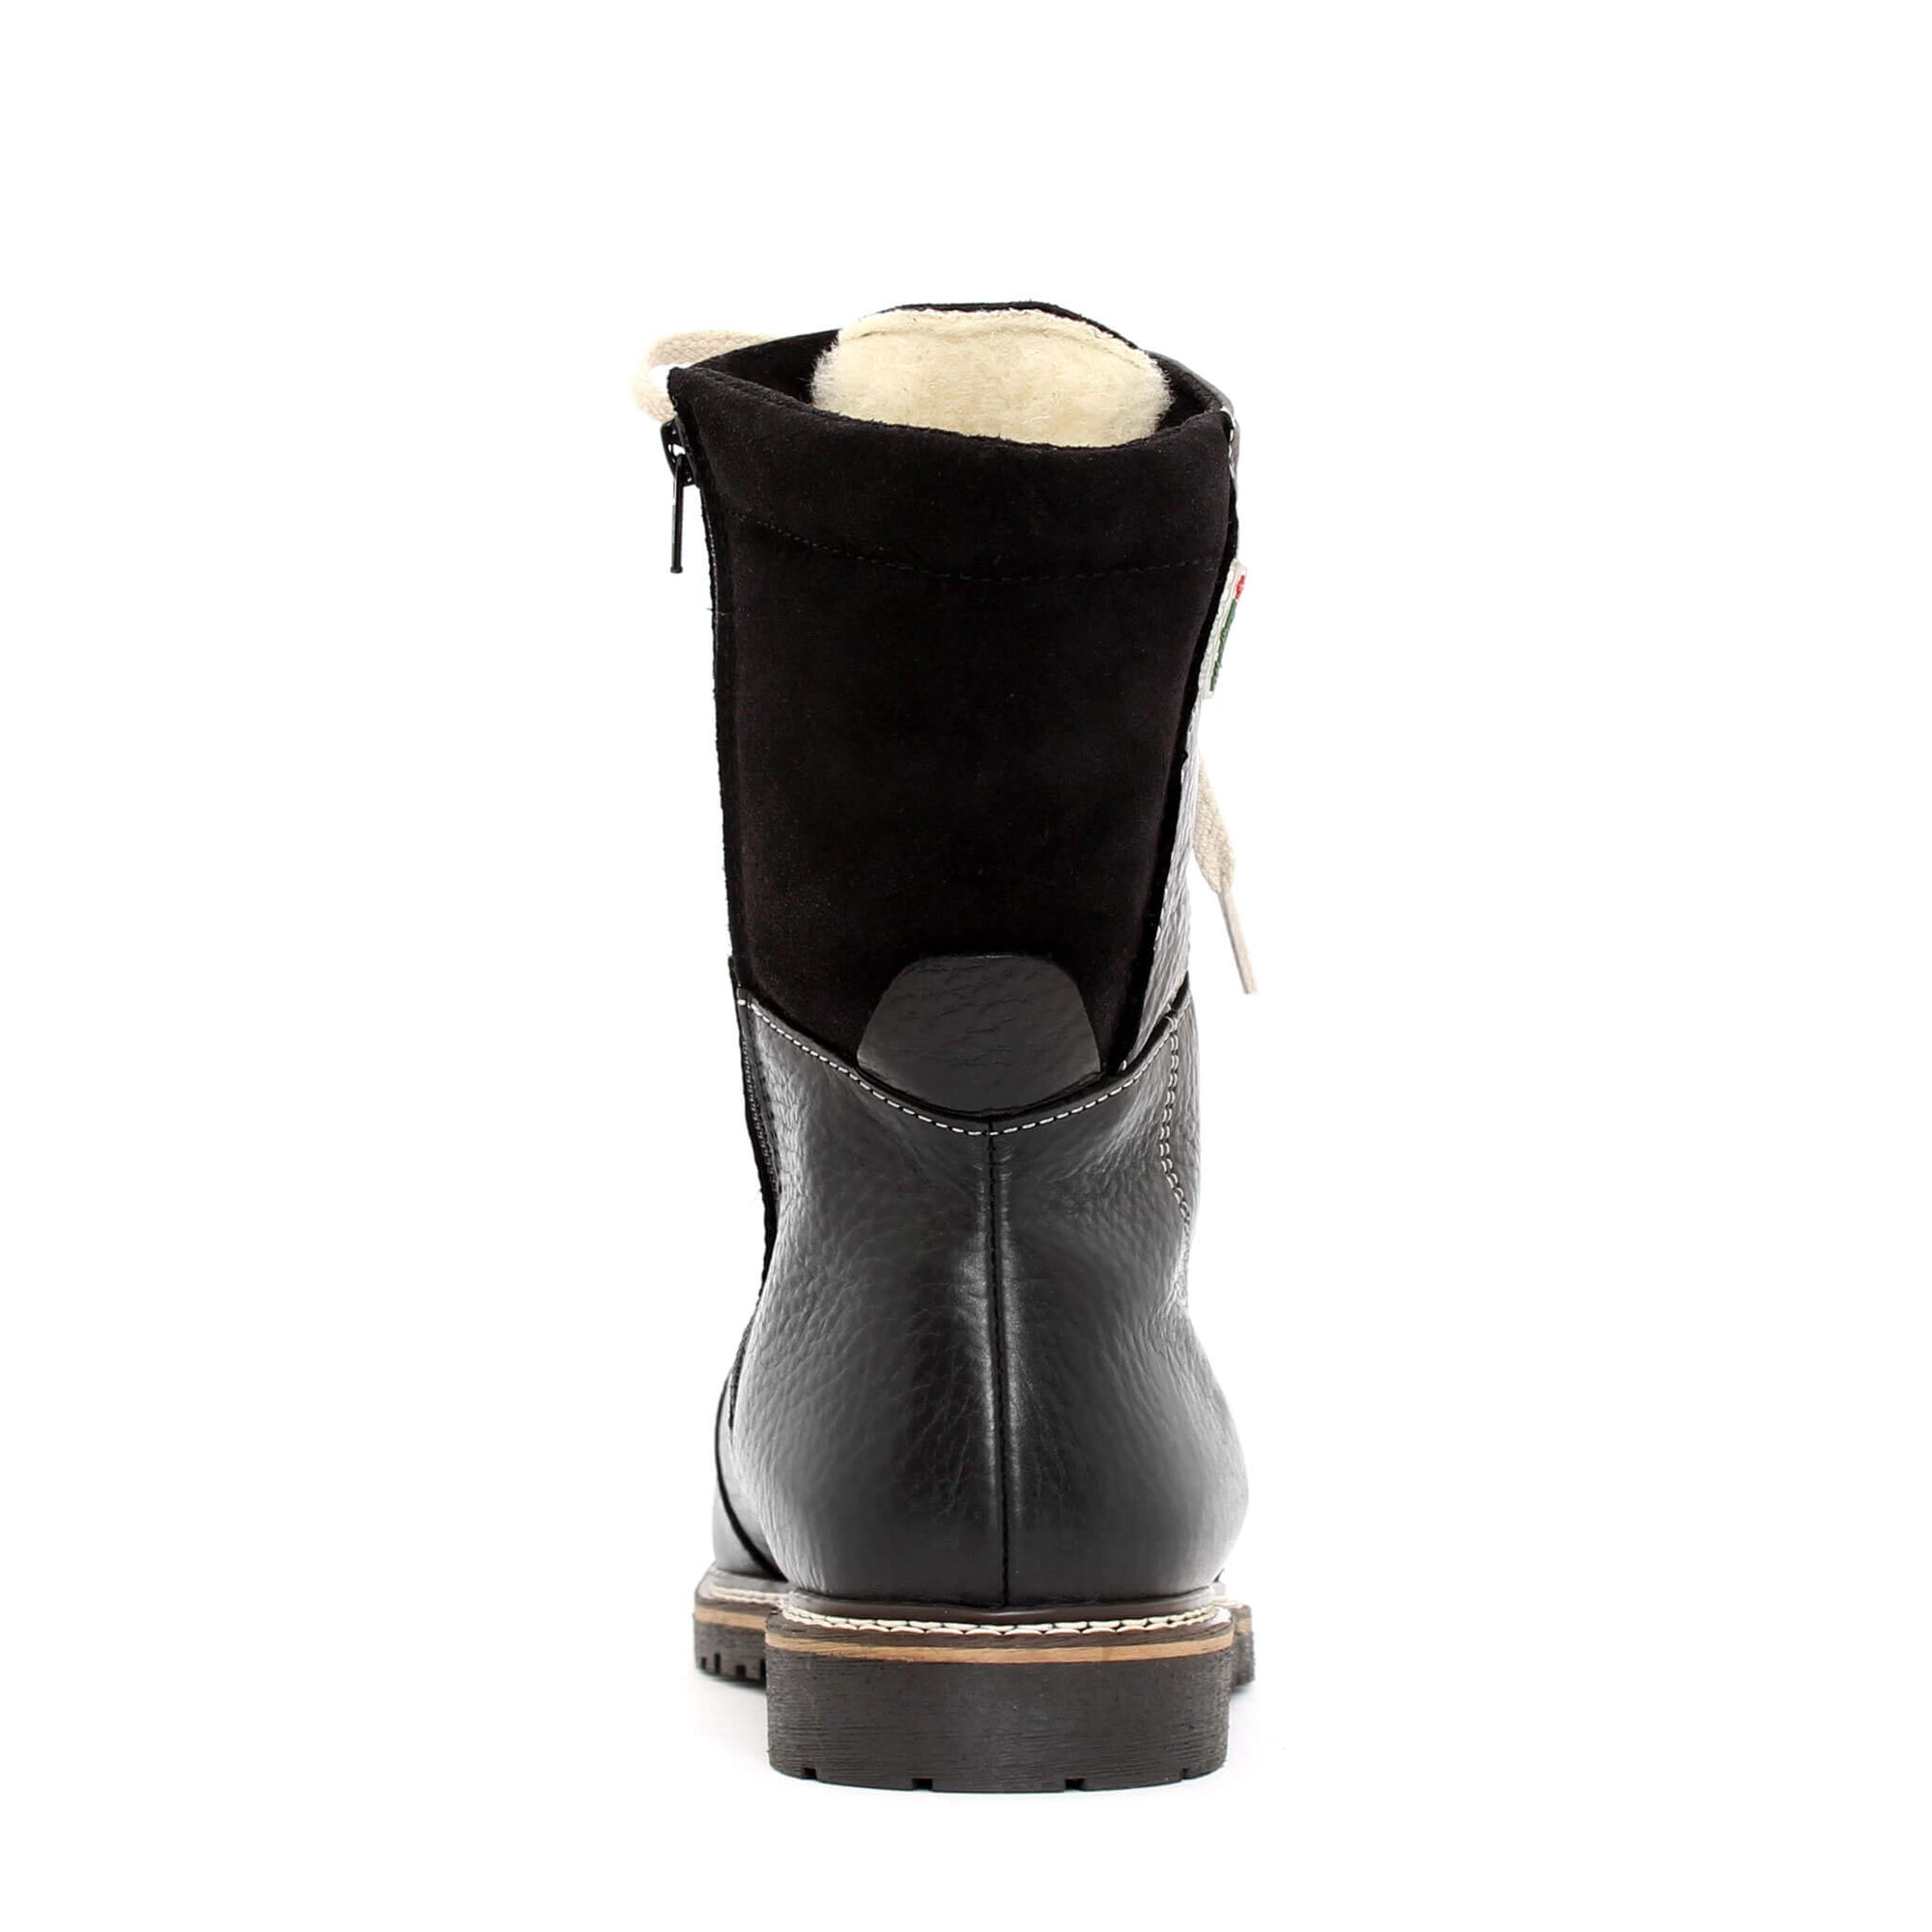 Banff Alpha winter boot for men - Brown-Olive